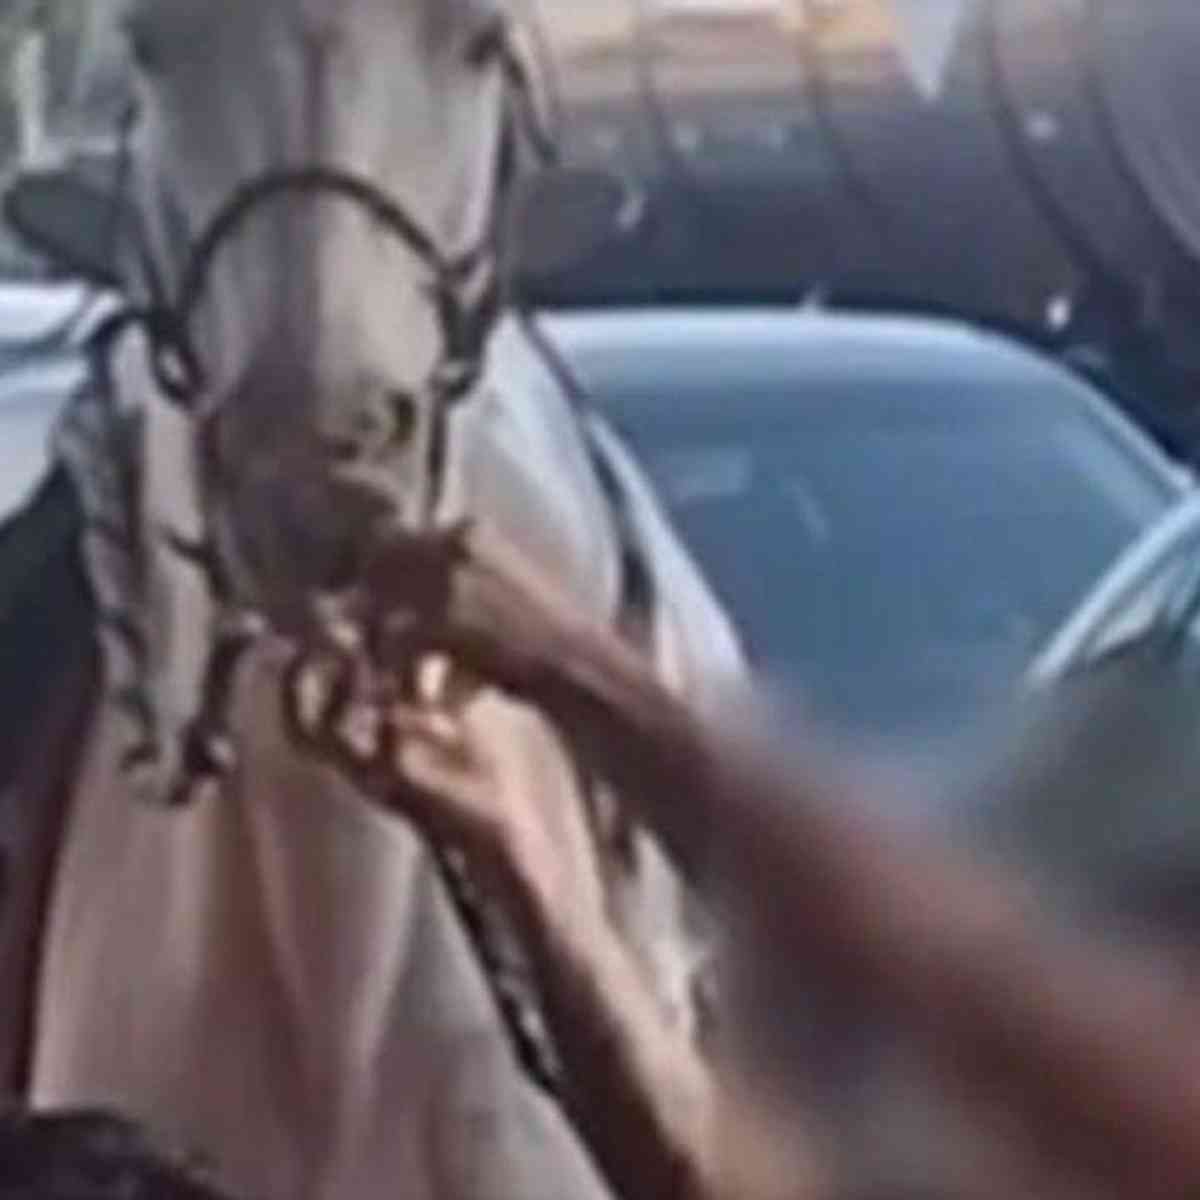 VÍDEO: Cavalo é atacado por pit bull em cena desesperadora